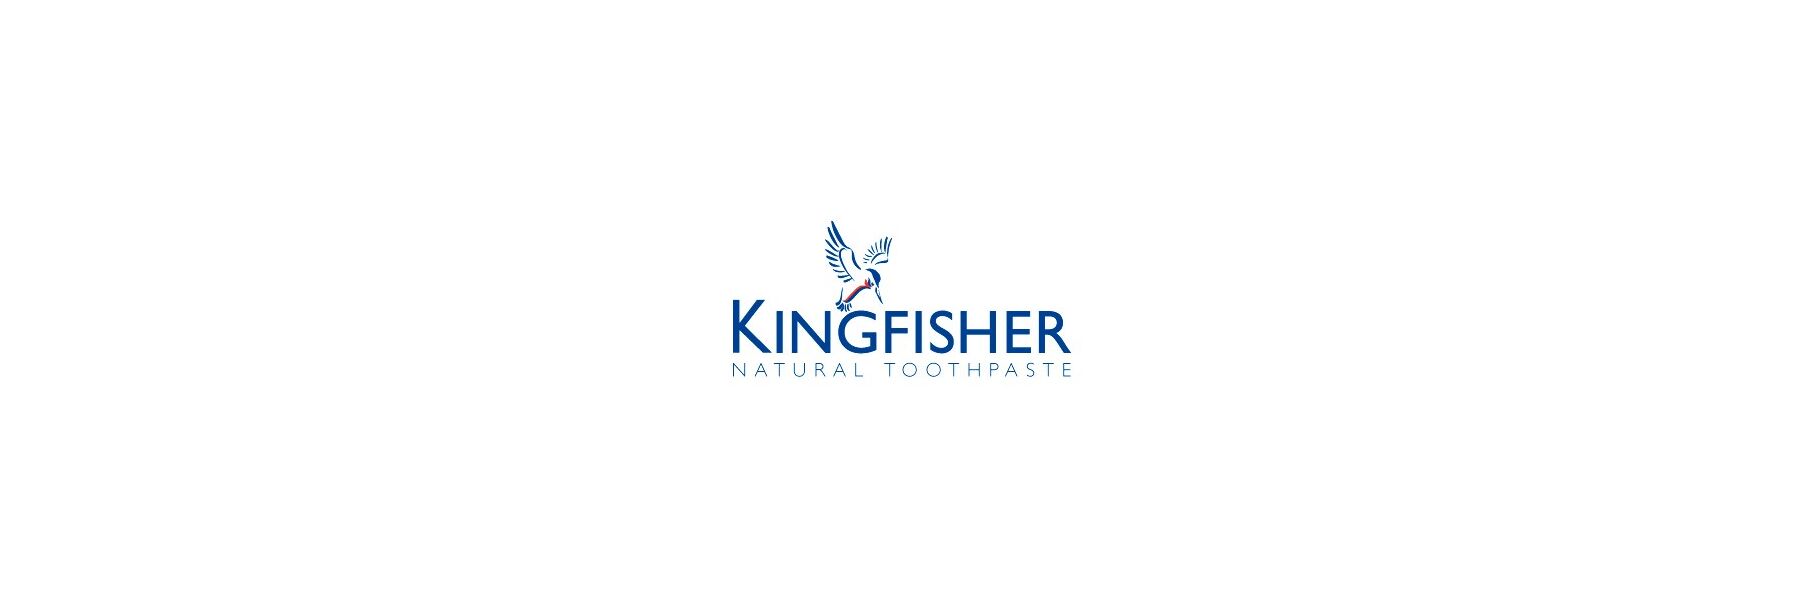 Kingfisher ist Großbritanniens meist verkaufte...